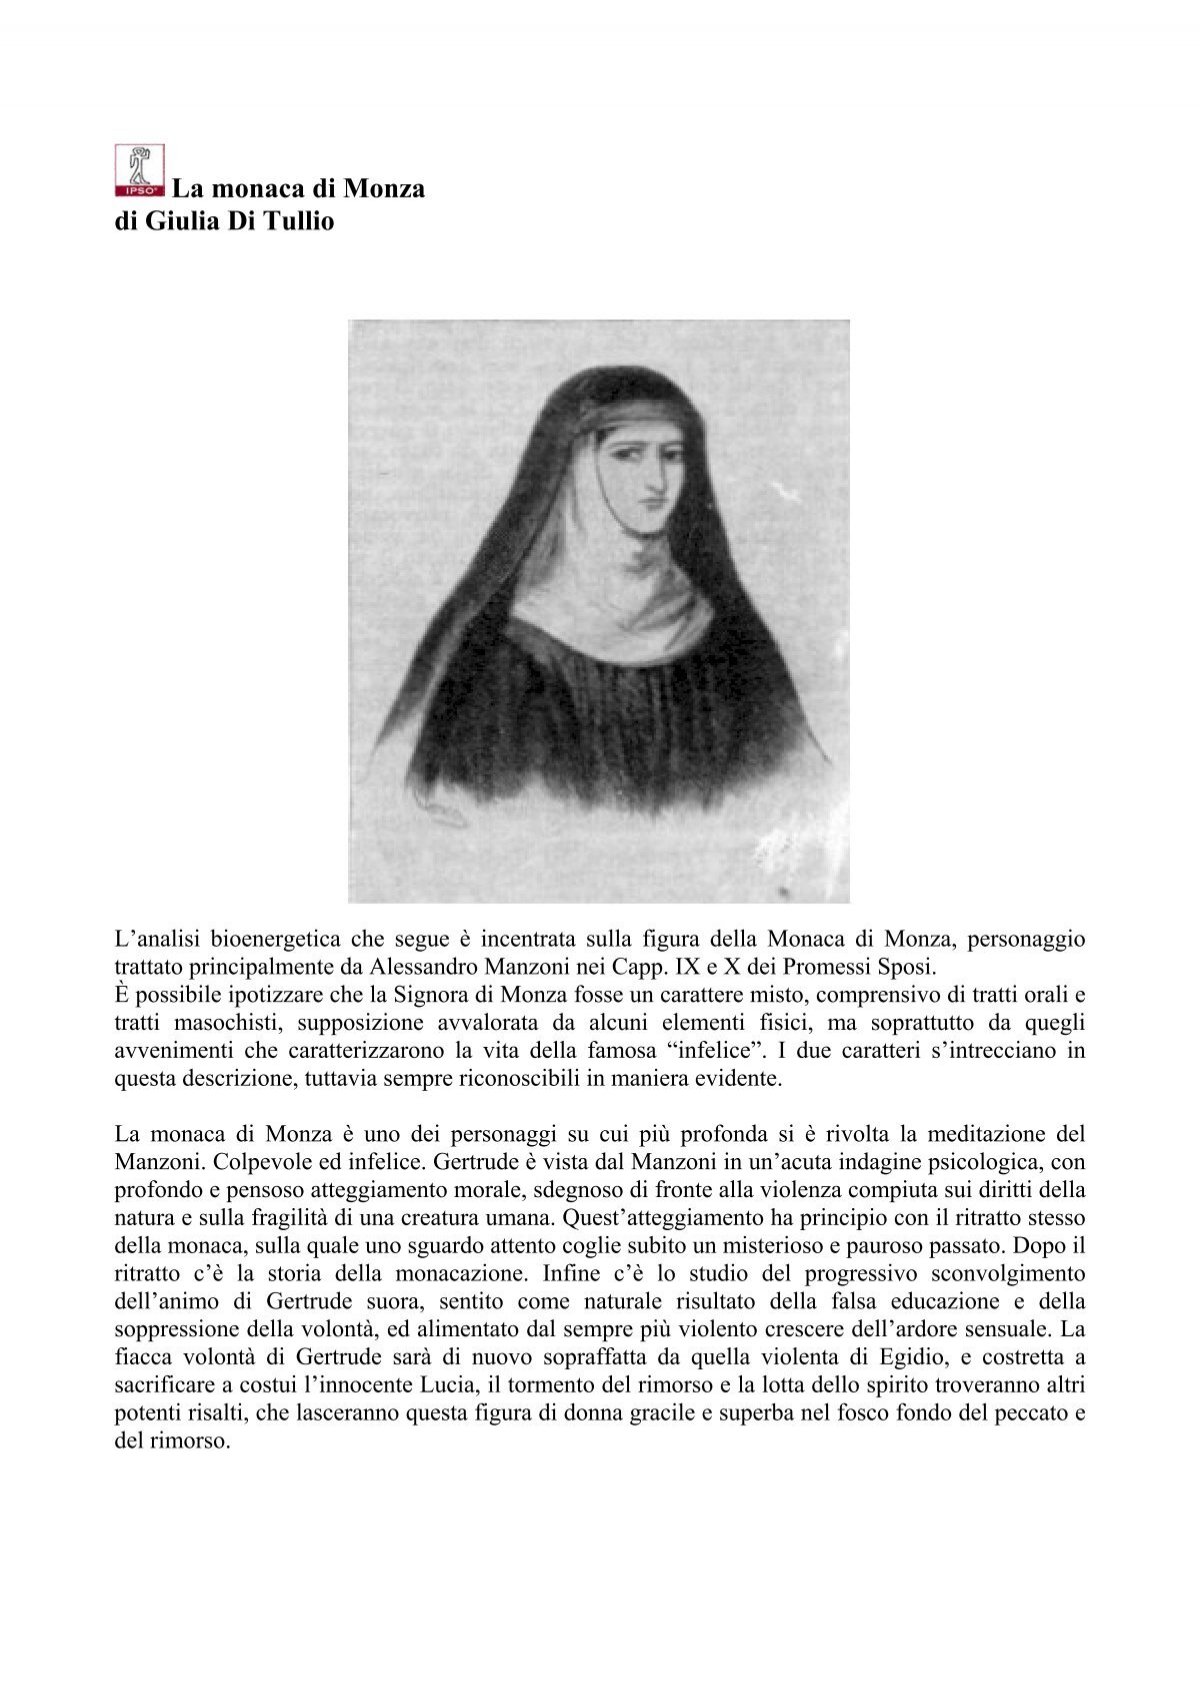 Gertrude ovvero la Monaca di Monza nei Promessi Sposi